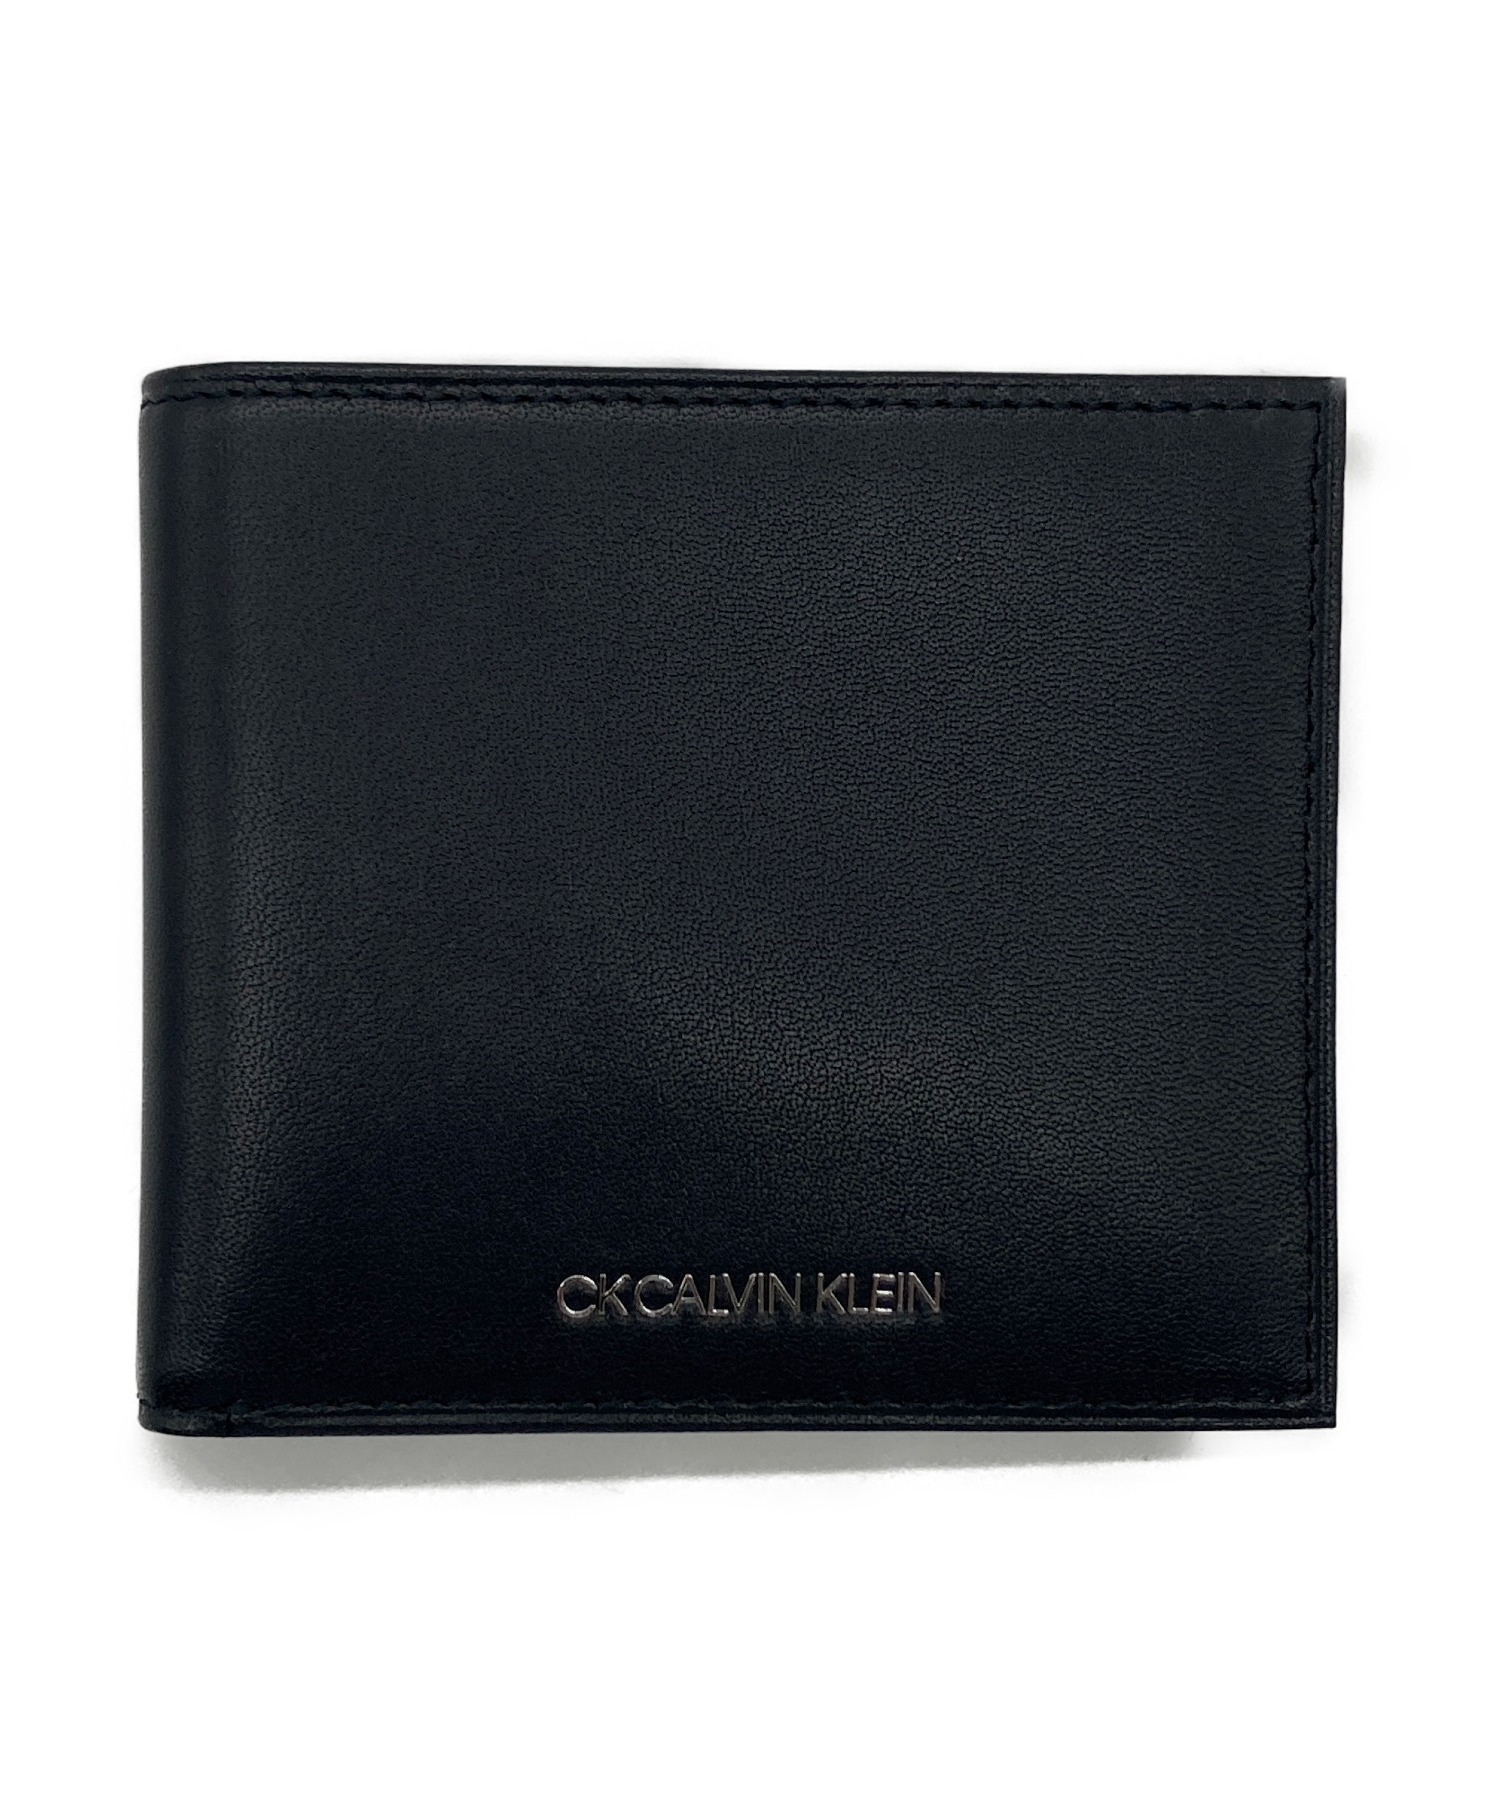 ck Calvin Klein (シーケーカルバンクライン) 2つ折り財布 ブラック サイズ:下記参照 未使用品 832623